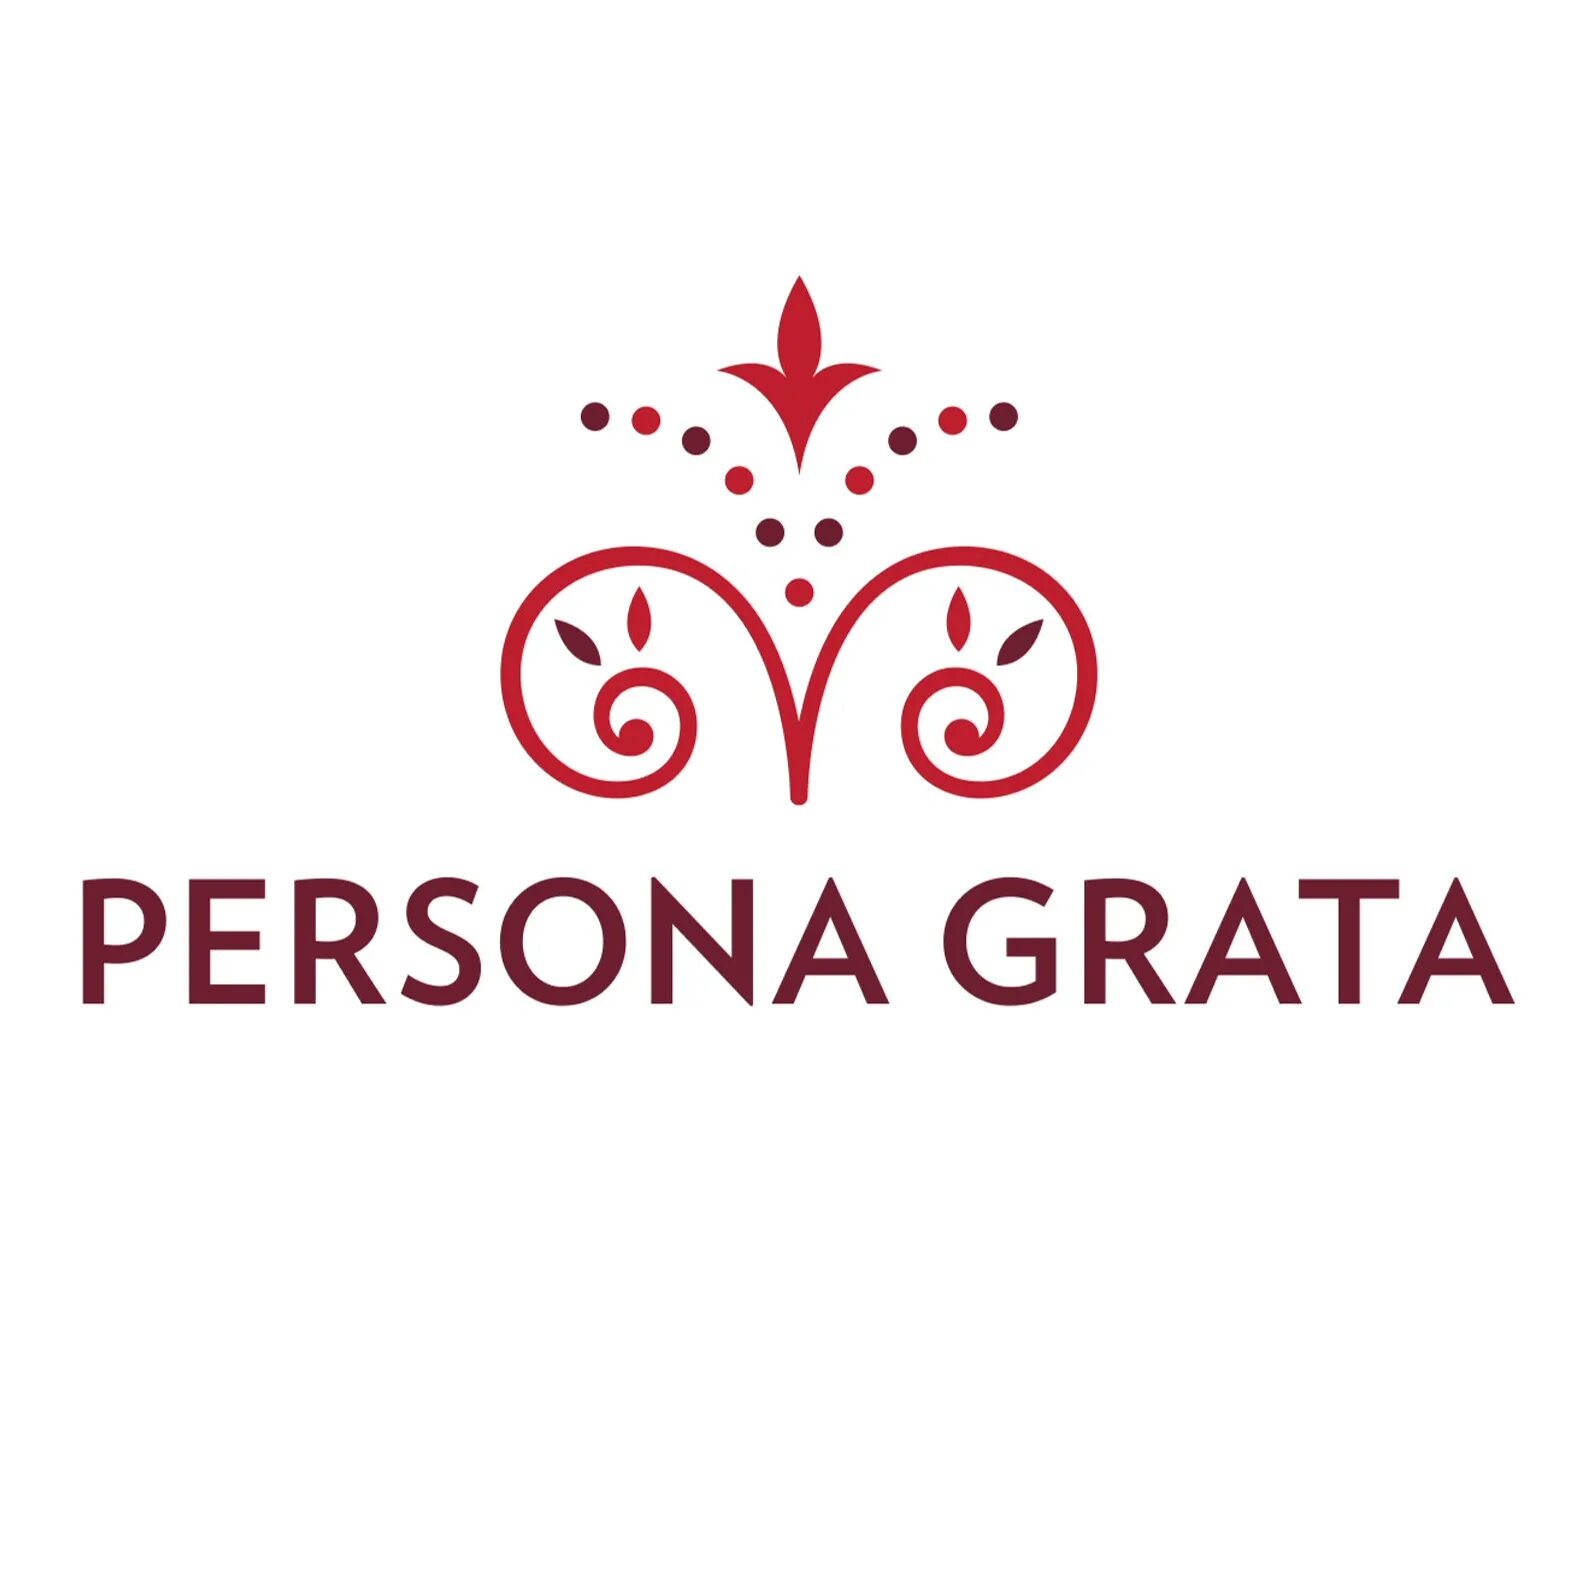 Персона грата. Grata логотип. ООО "персона грата". Persona grata ресторан. Персона грата что это значит простыми словами